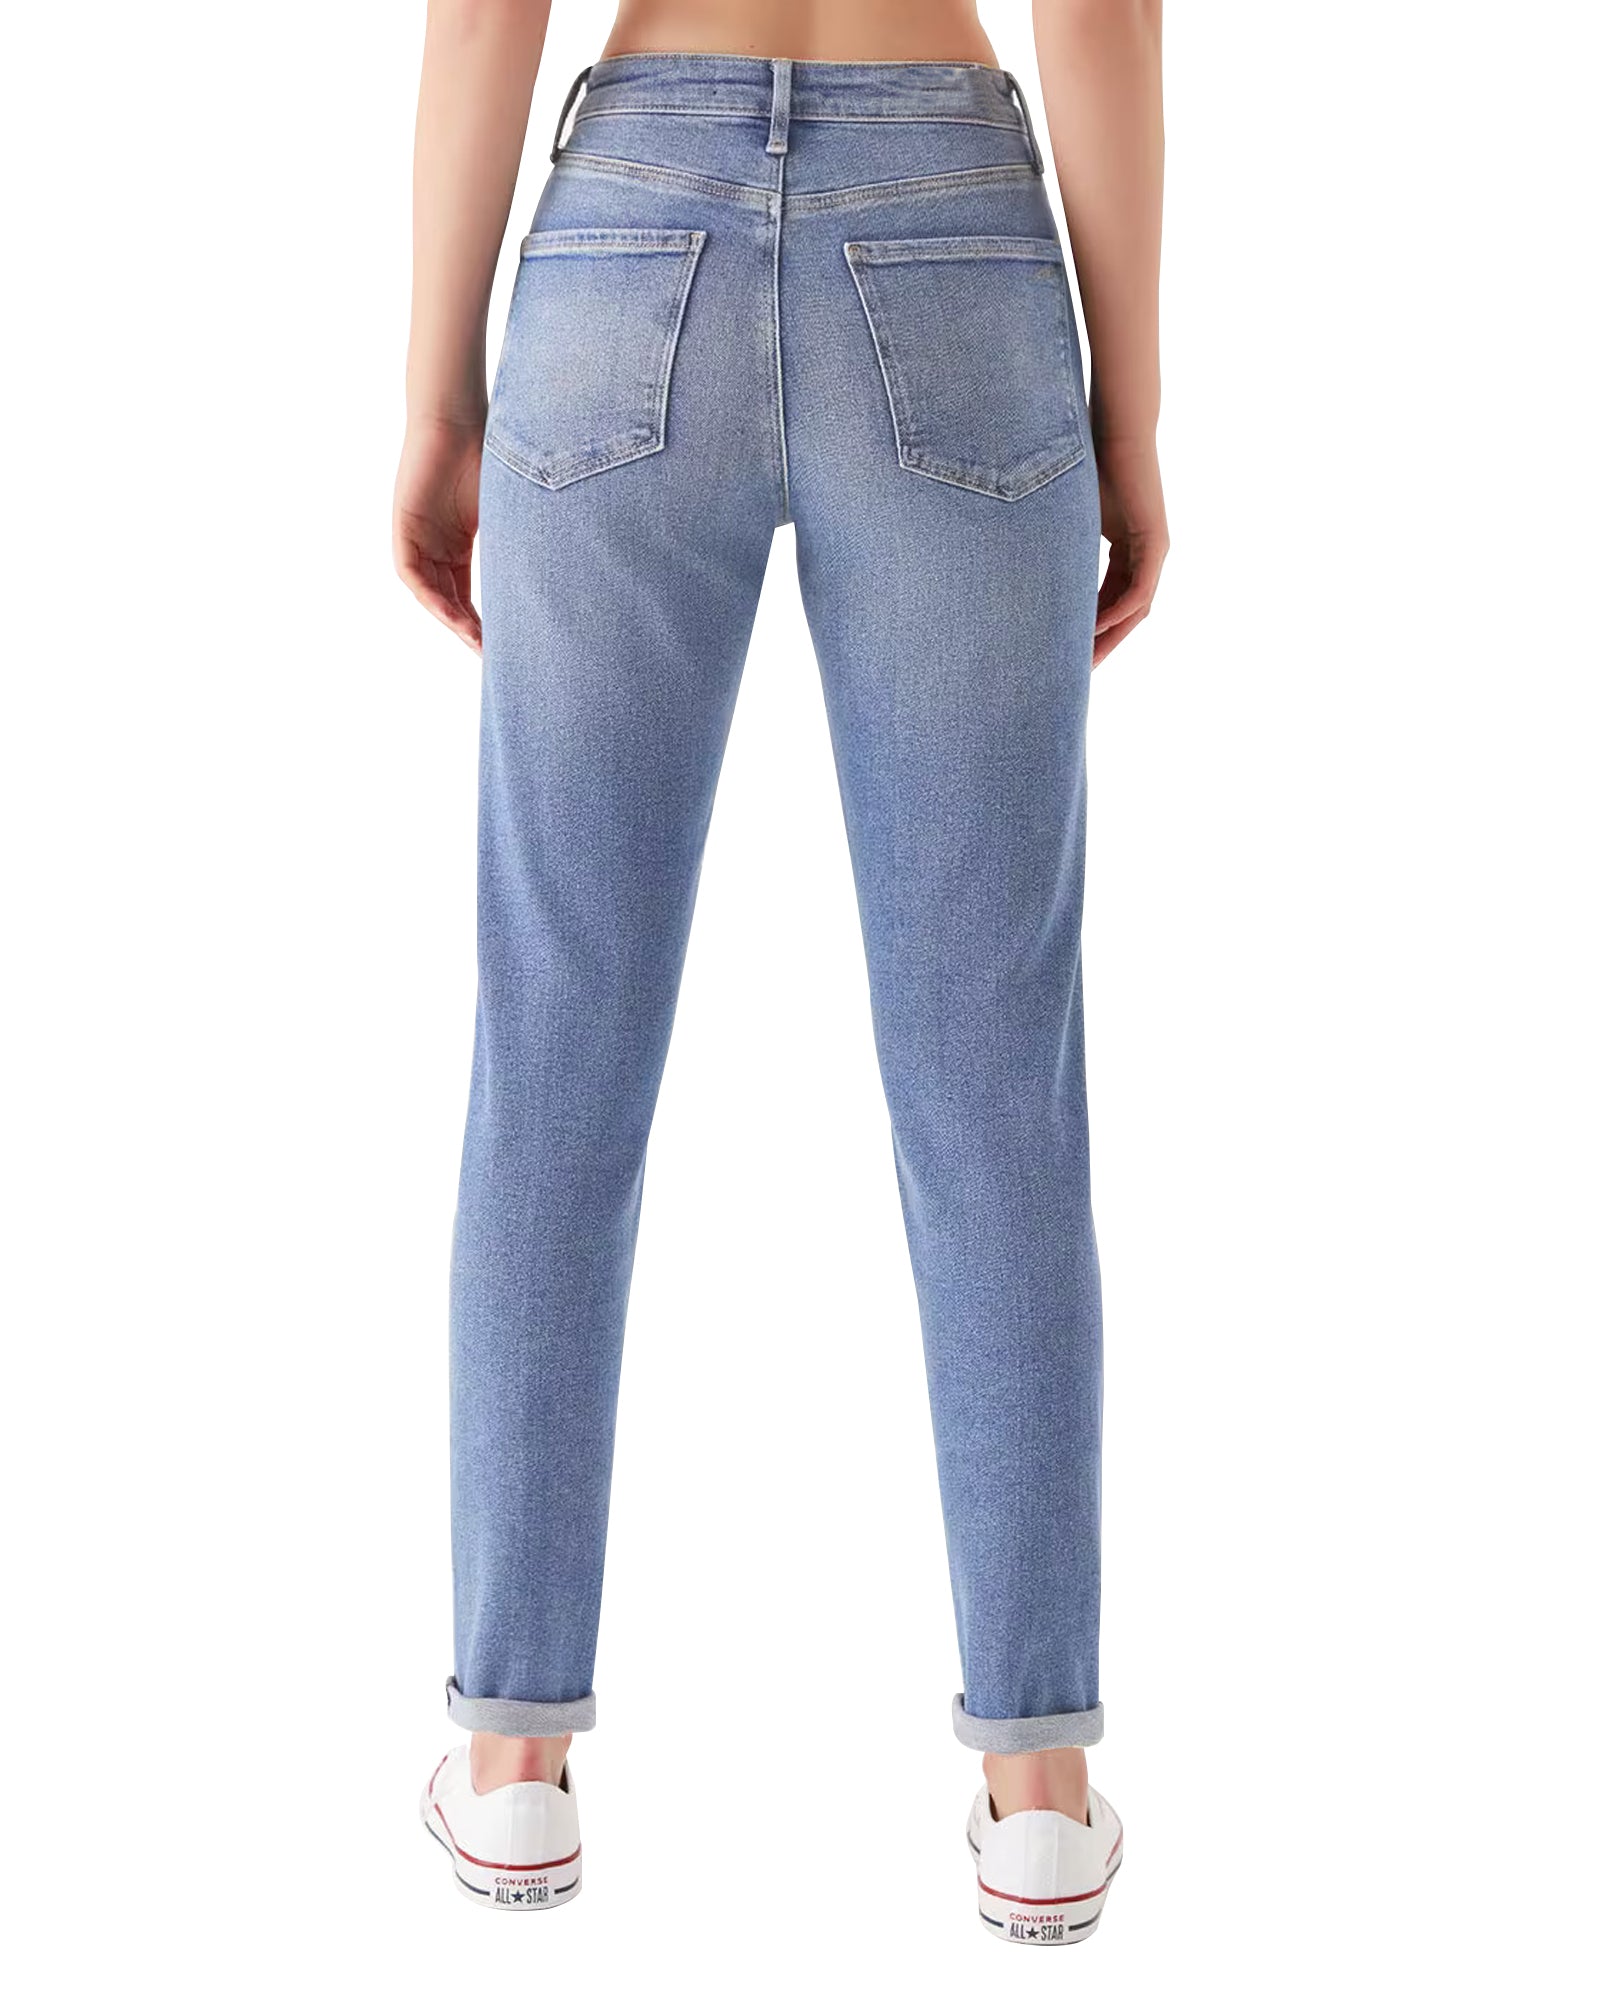 Women's Heavy Fade Denim Jeans